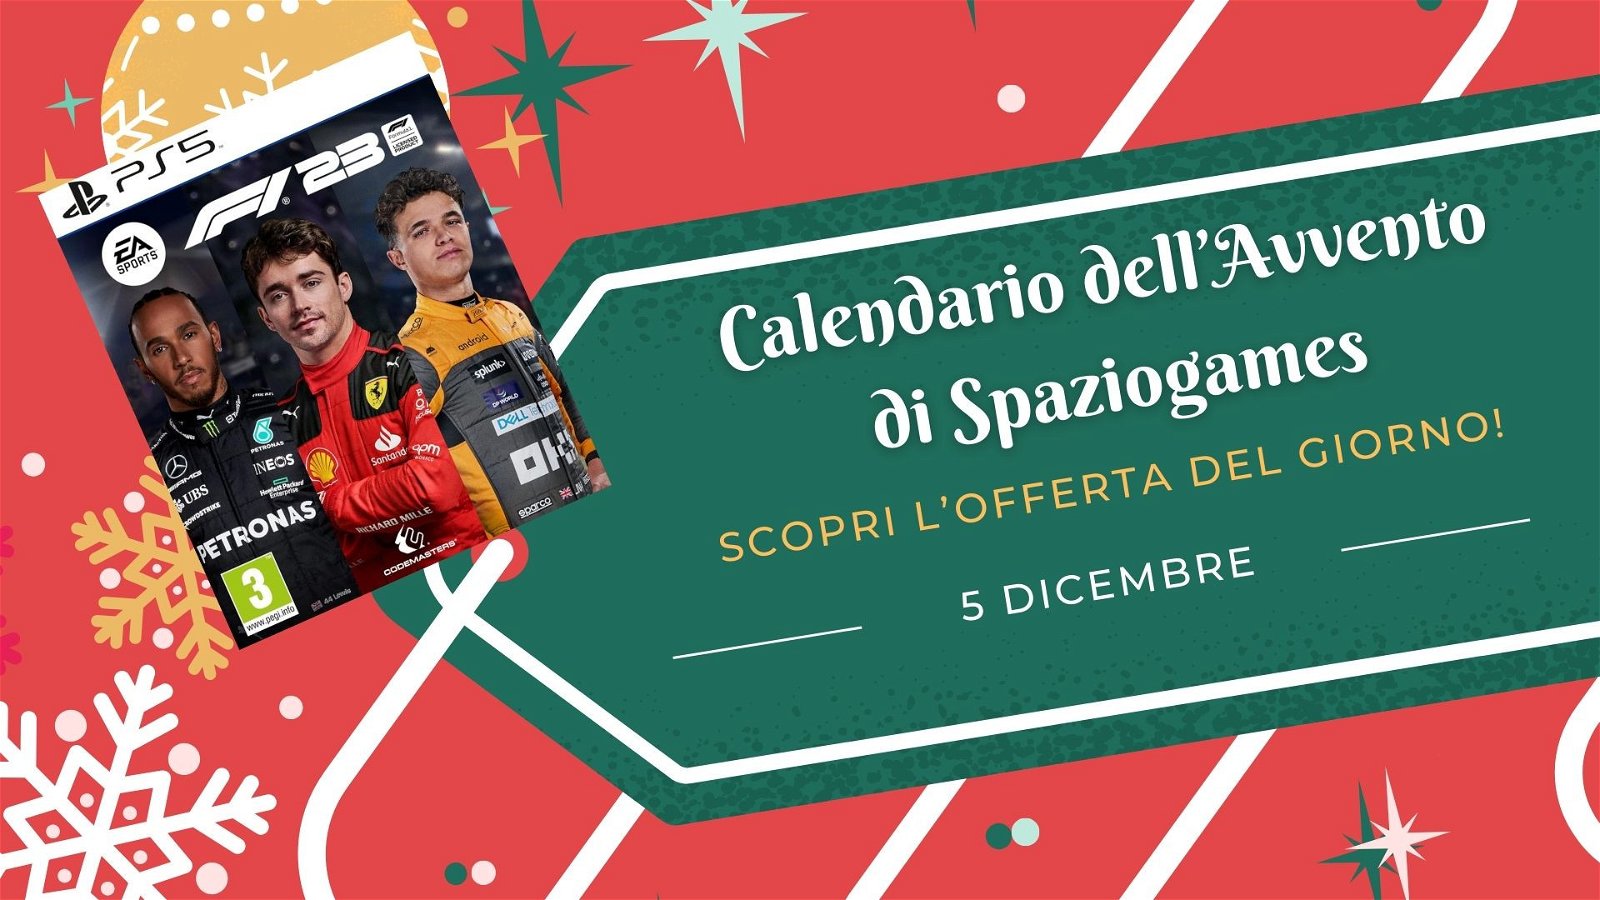 Calendario dell'avvento di Spaziogames: scopri l'offerta del 5 dicembre